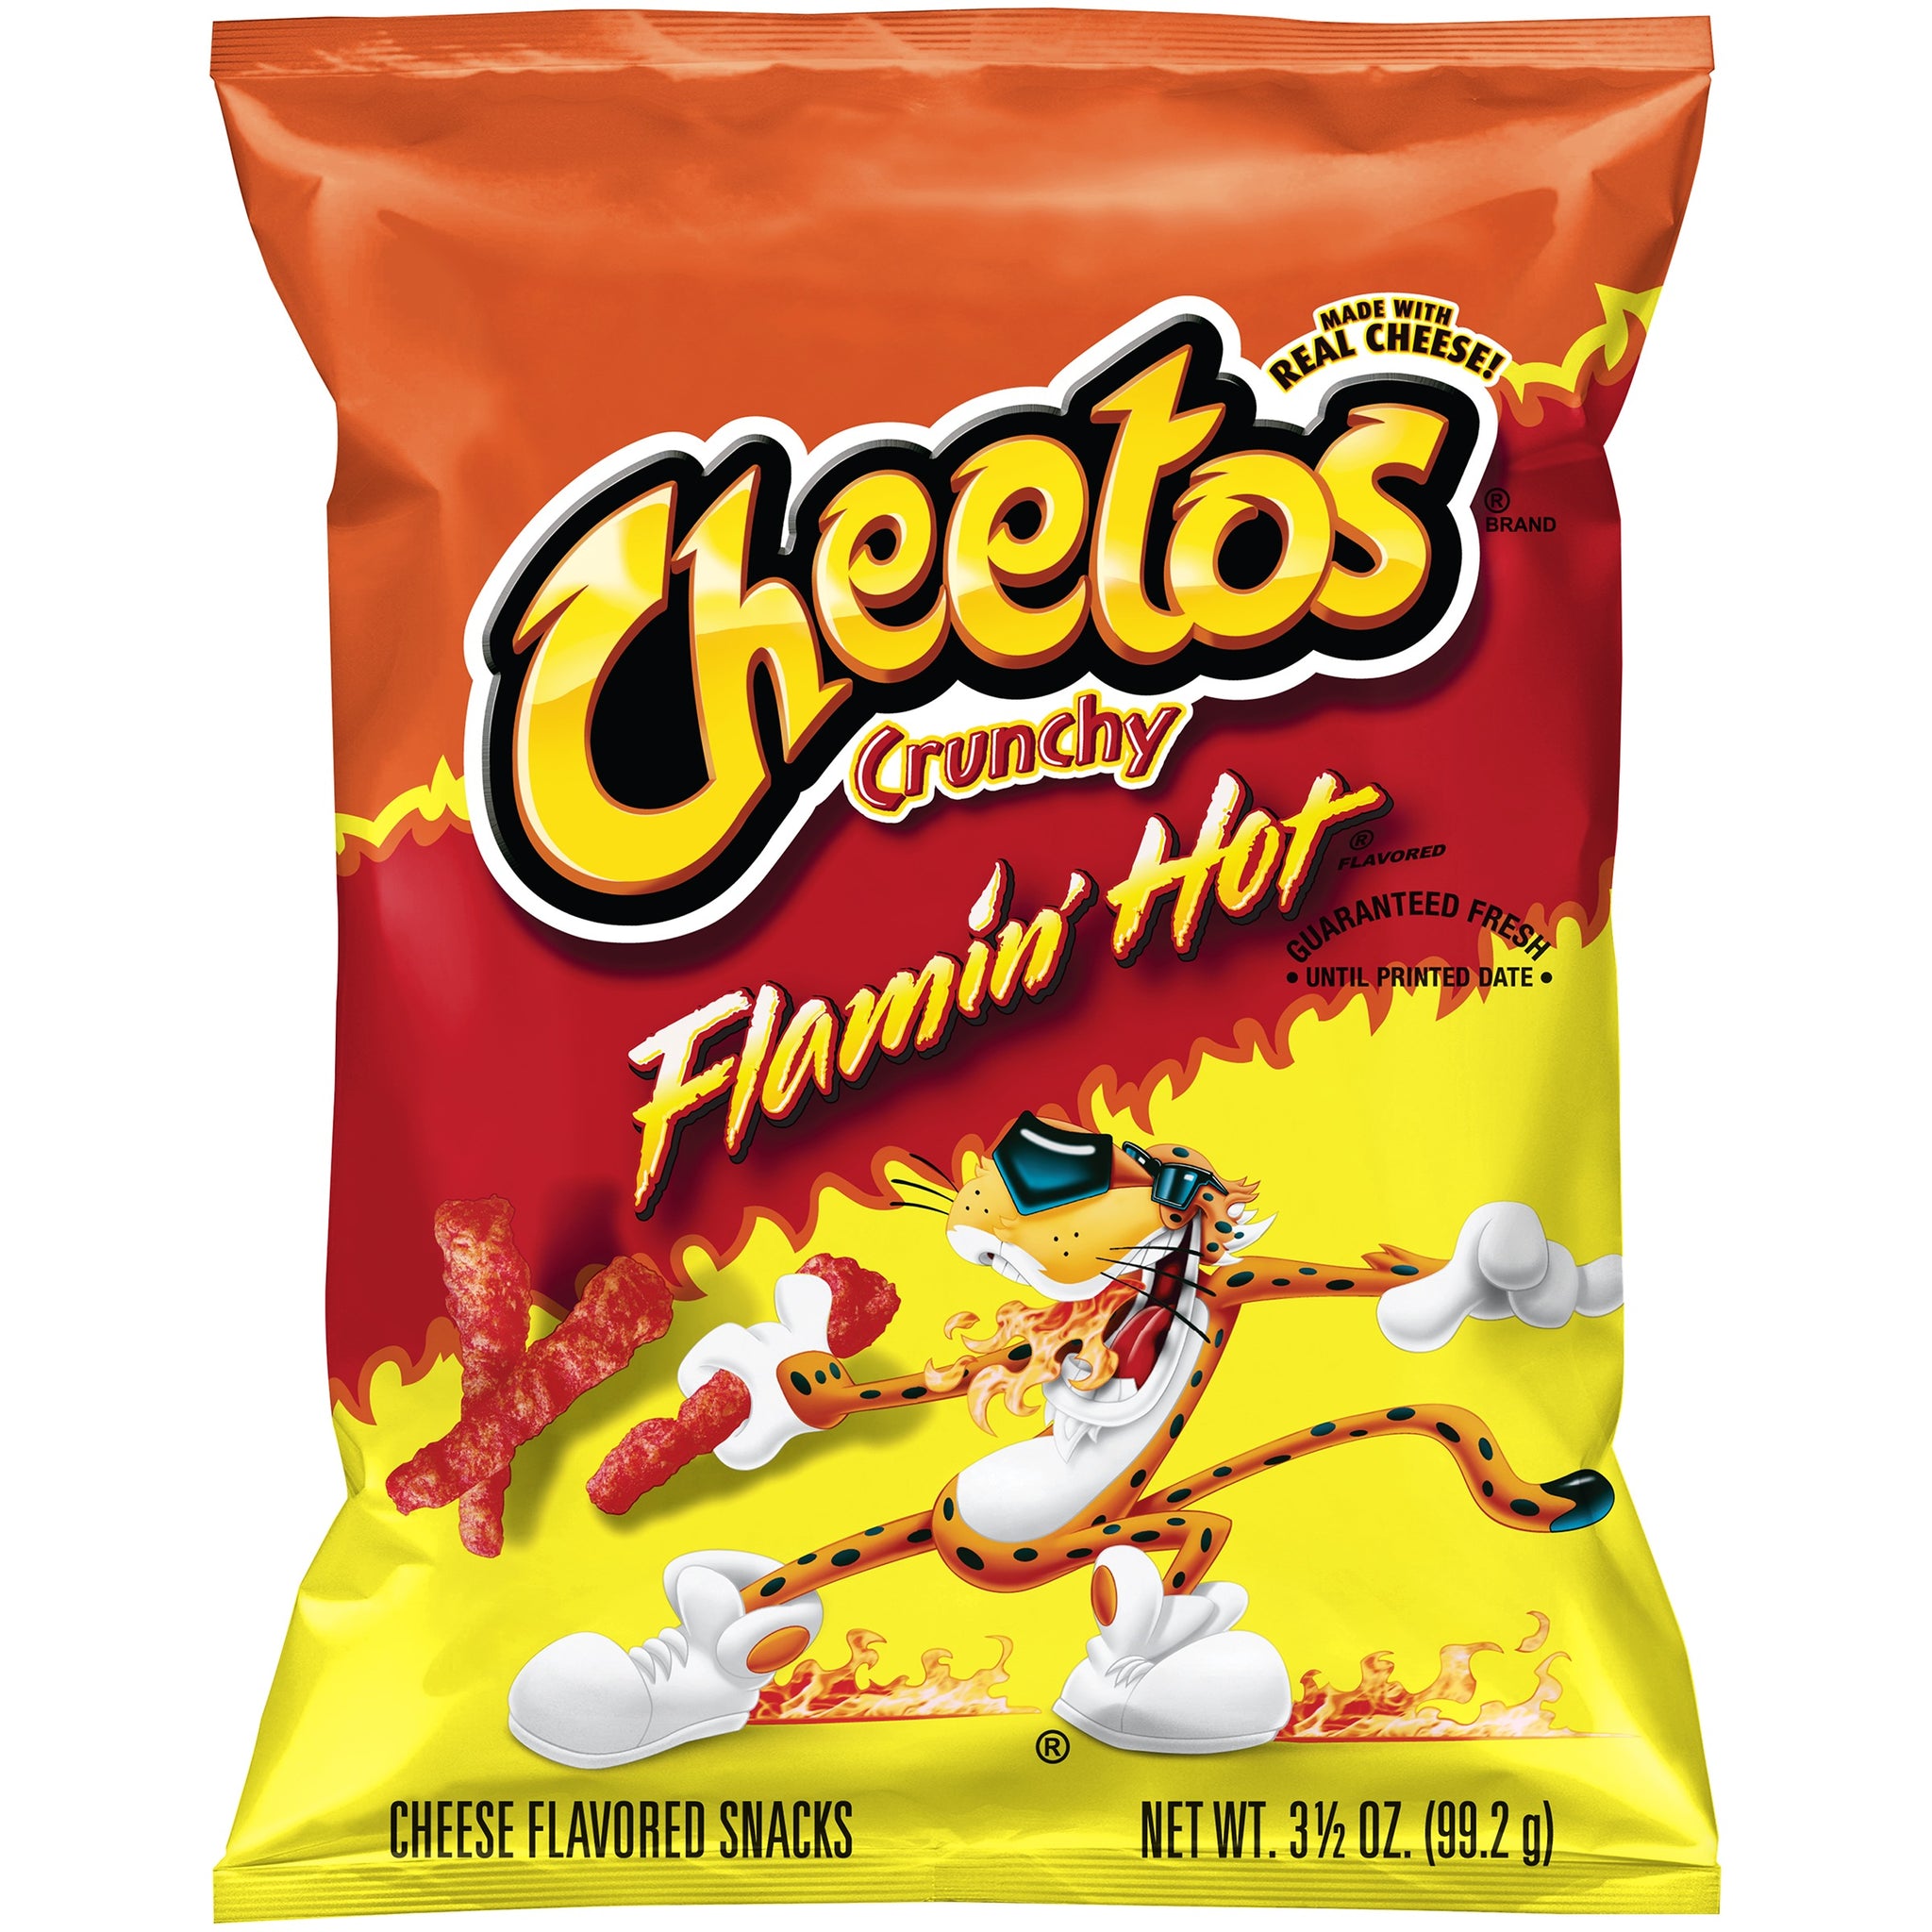 hot cheetos puffs